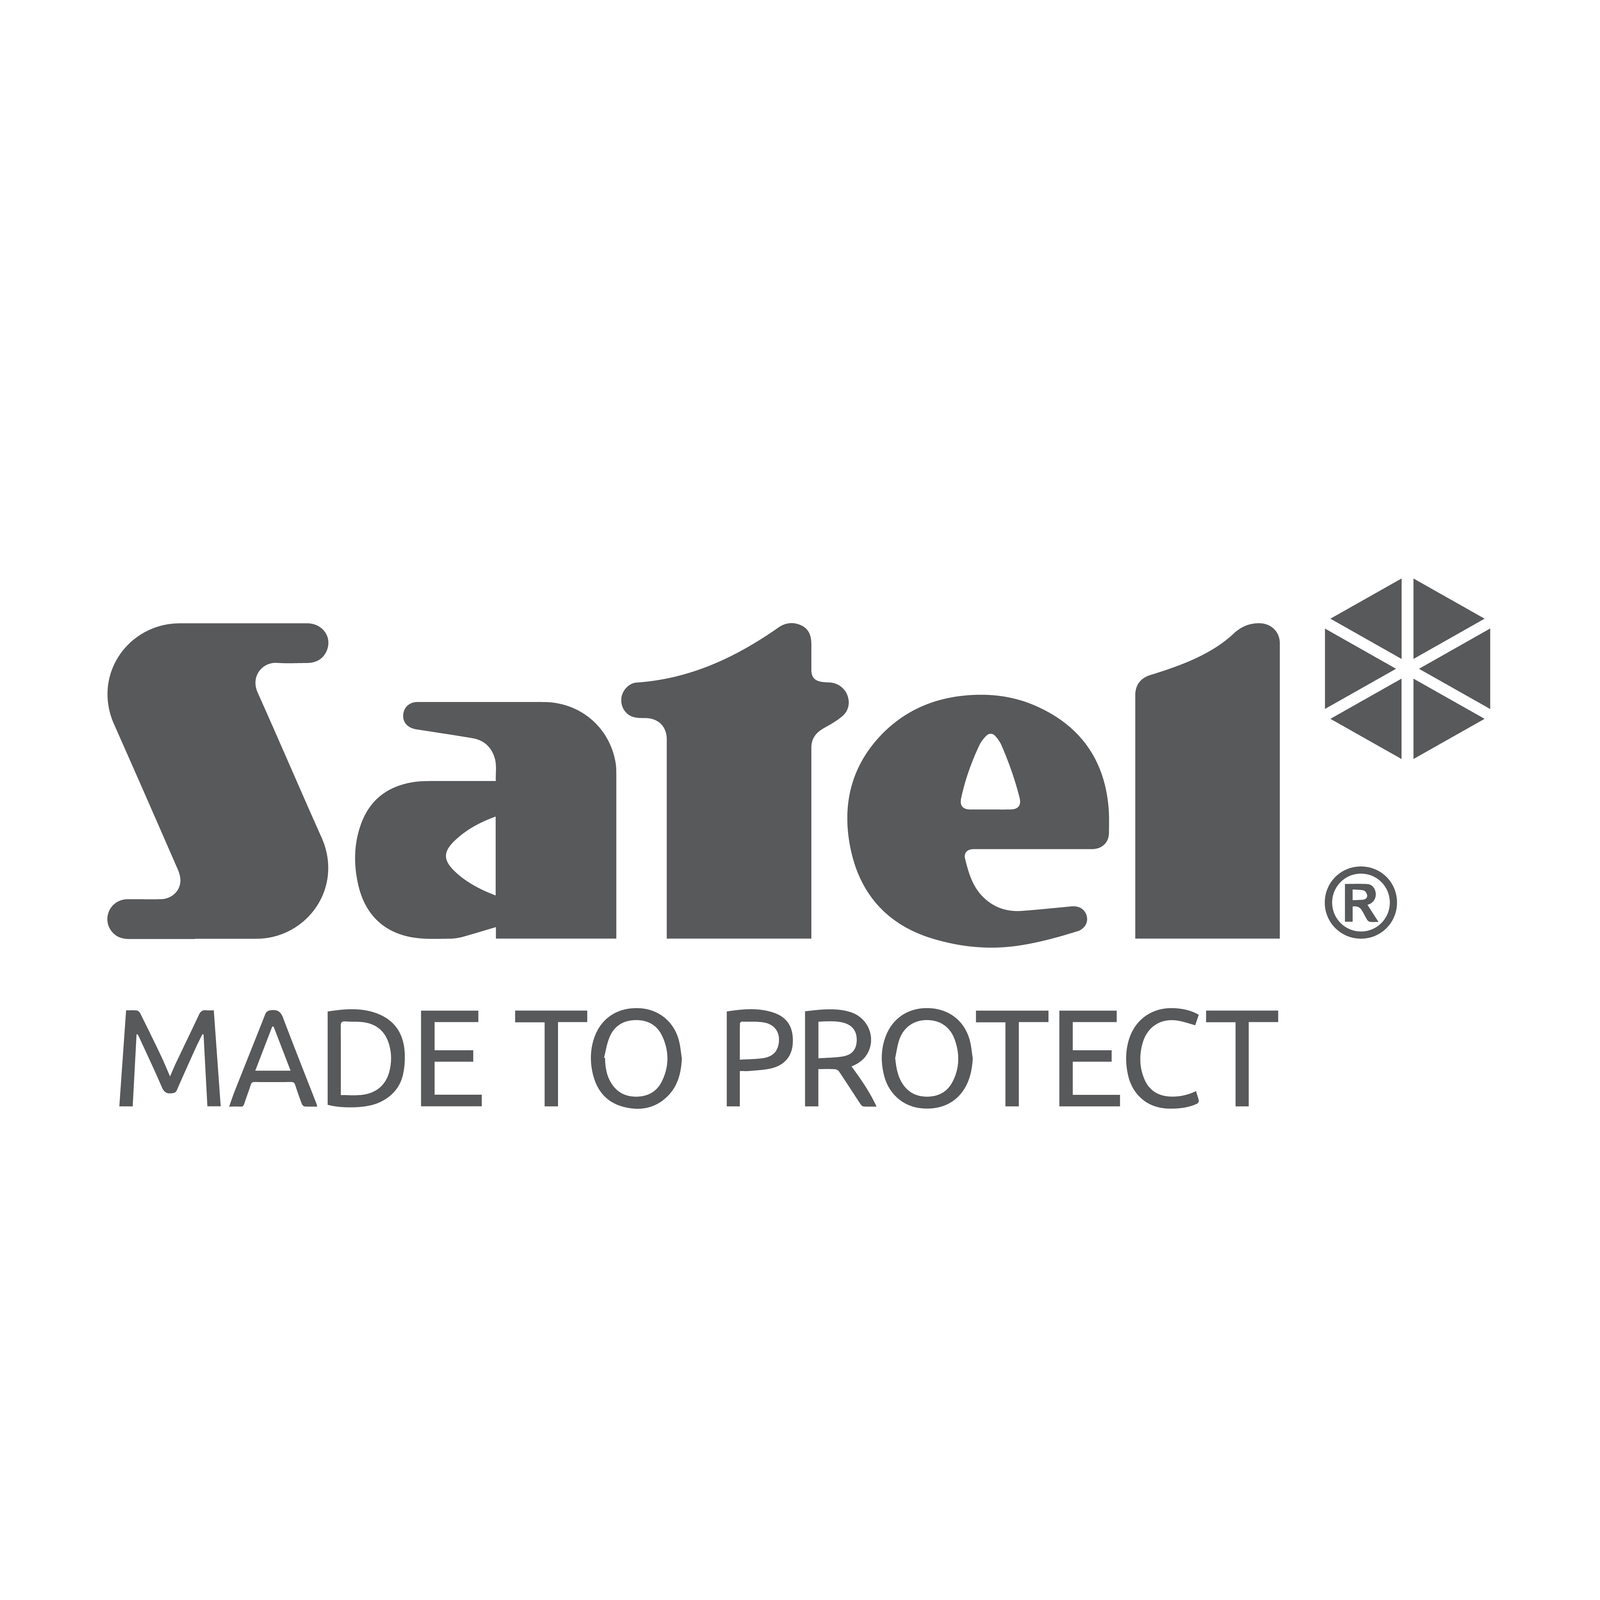 satel-logos-11